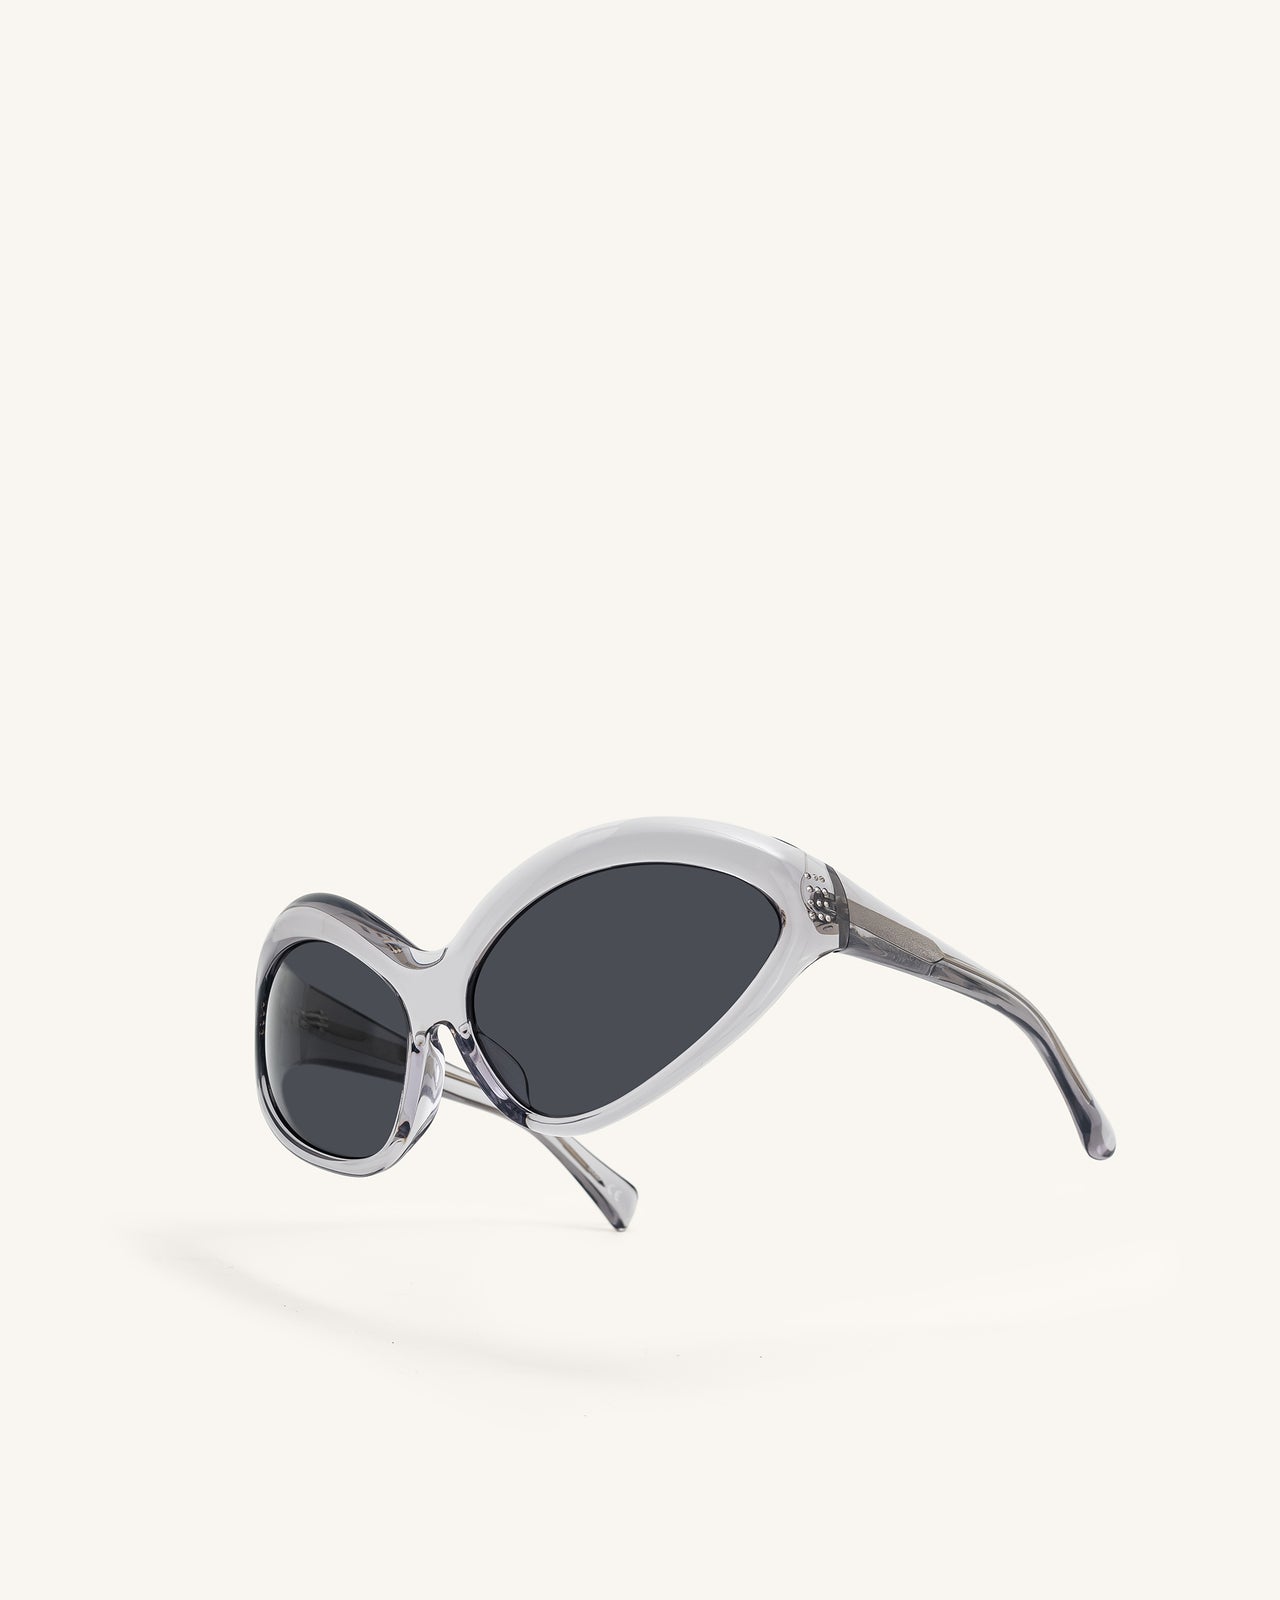 Quorra Cateye Sunglasses - Gray